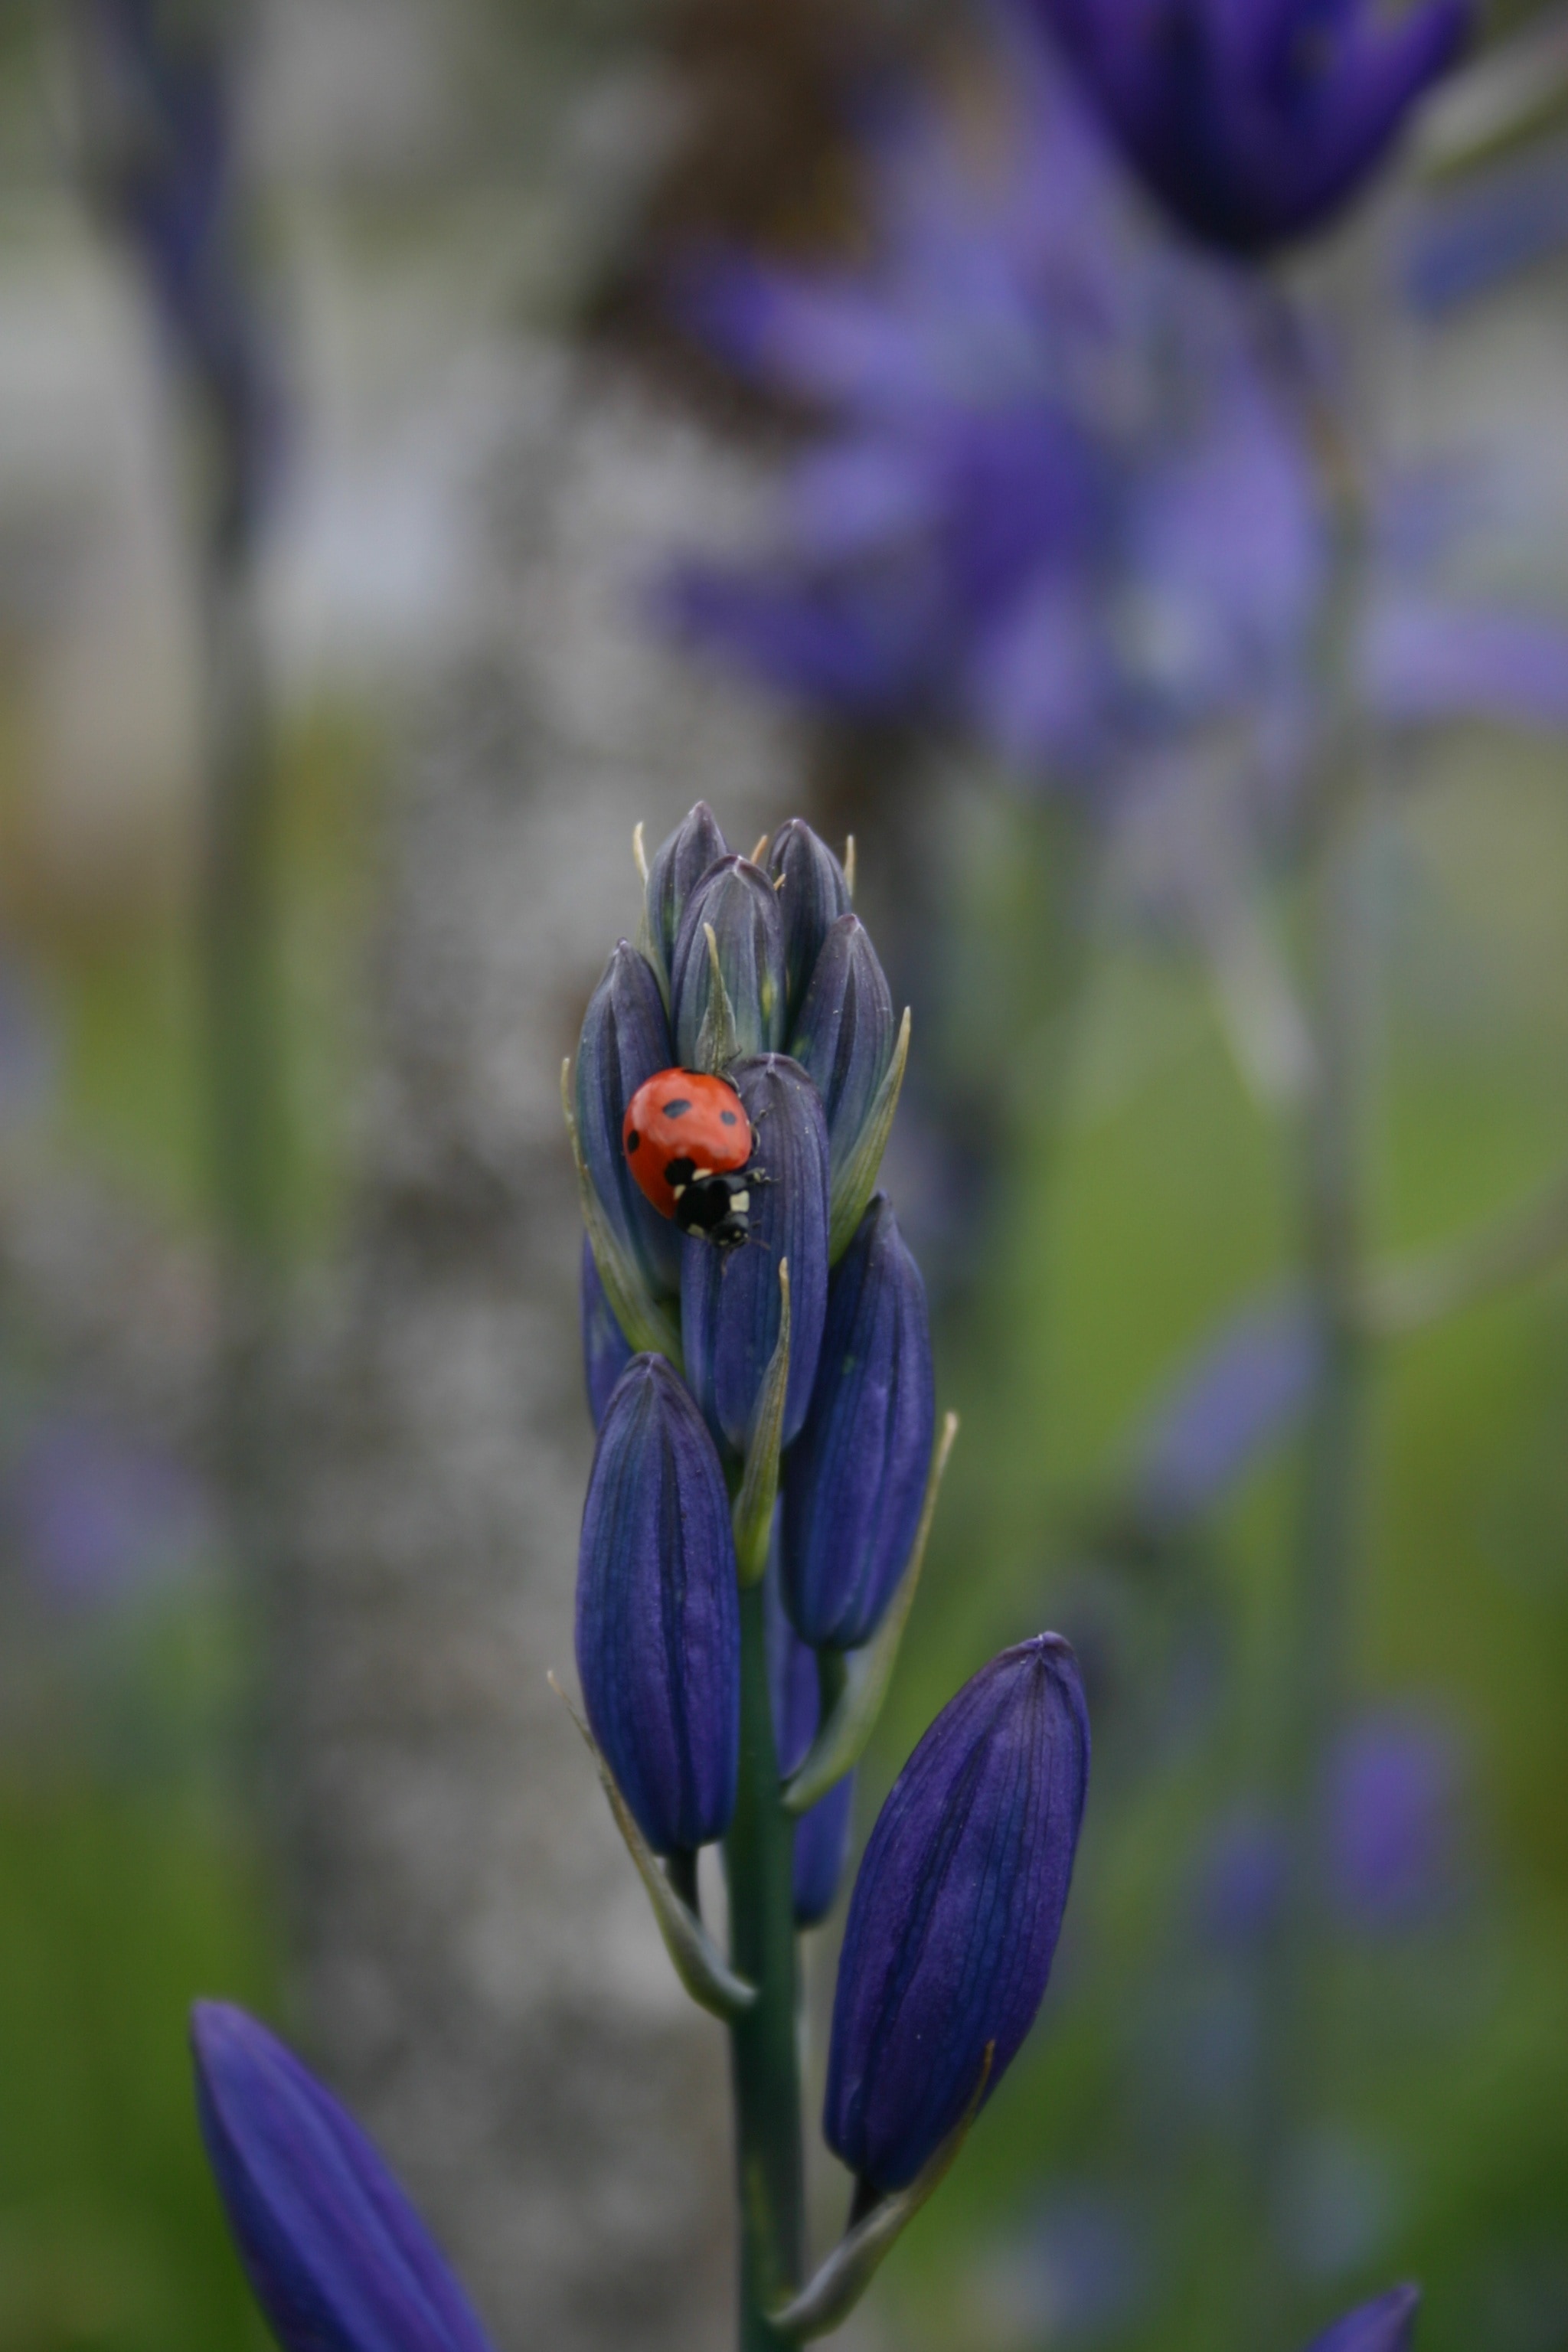 spotted ladybug and purple petaled flower